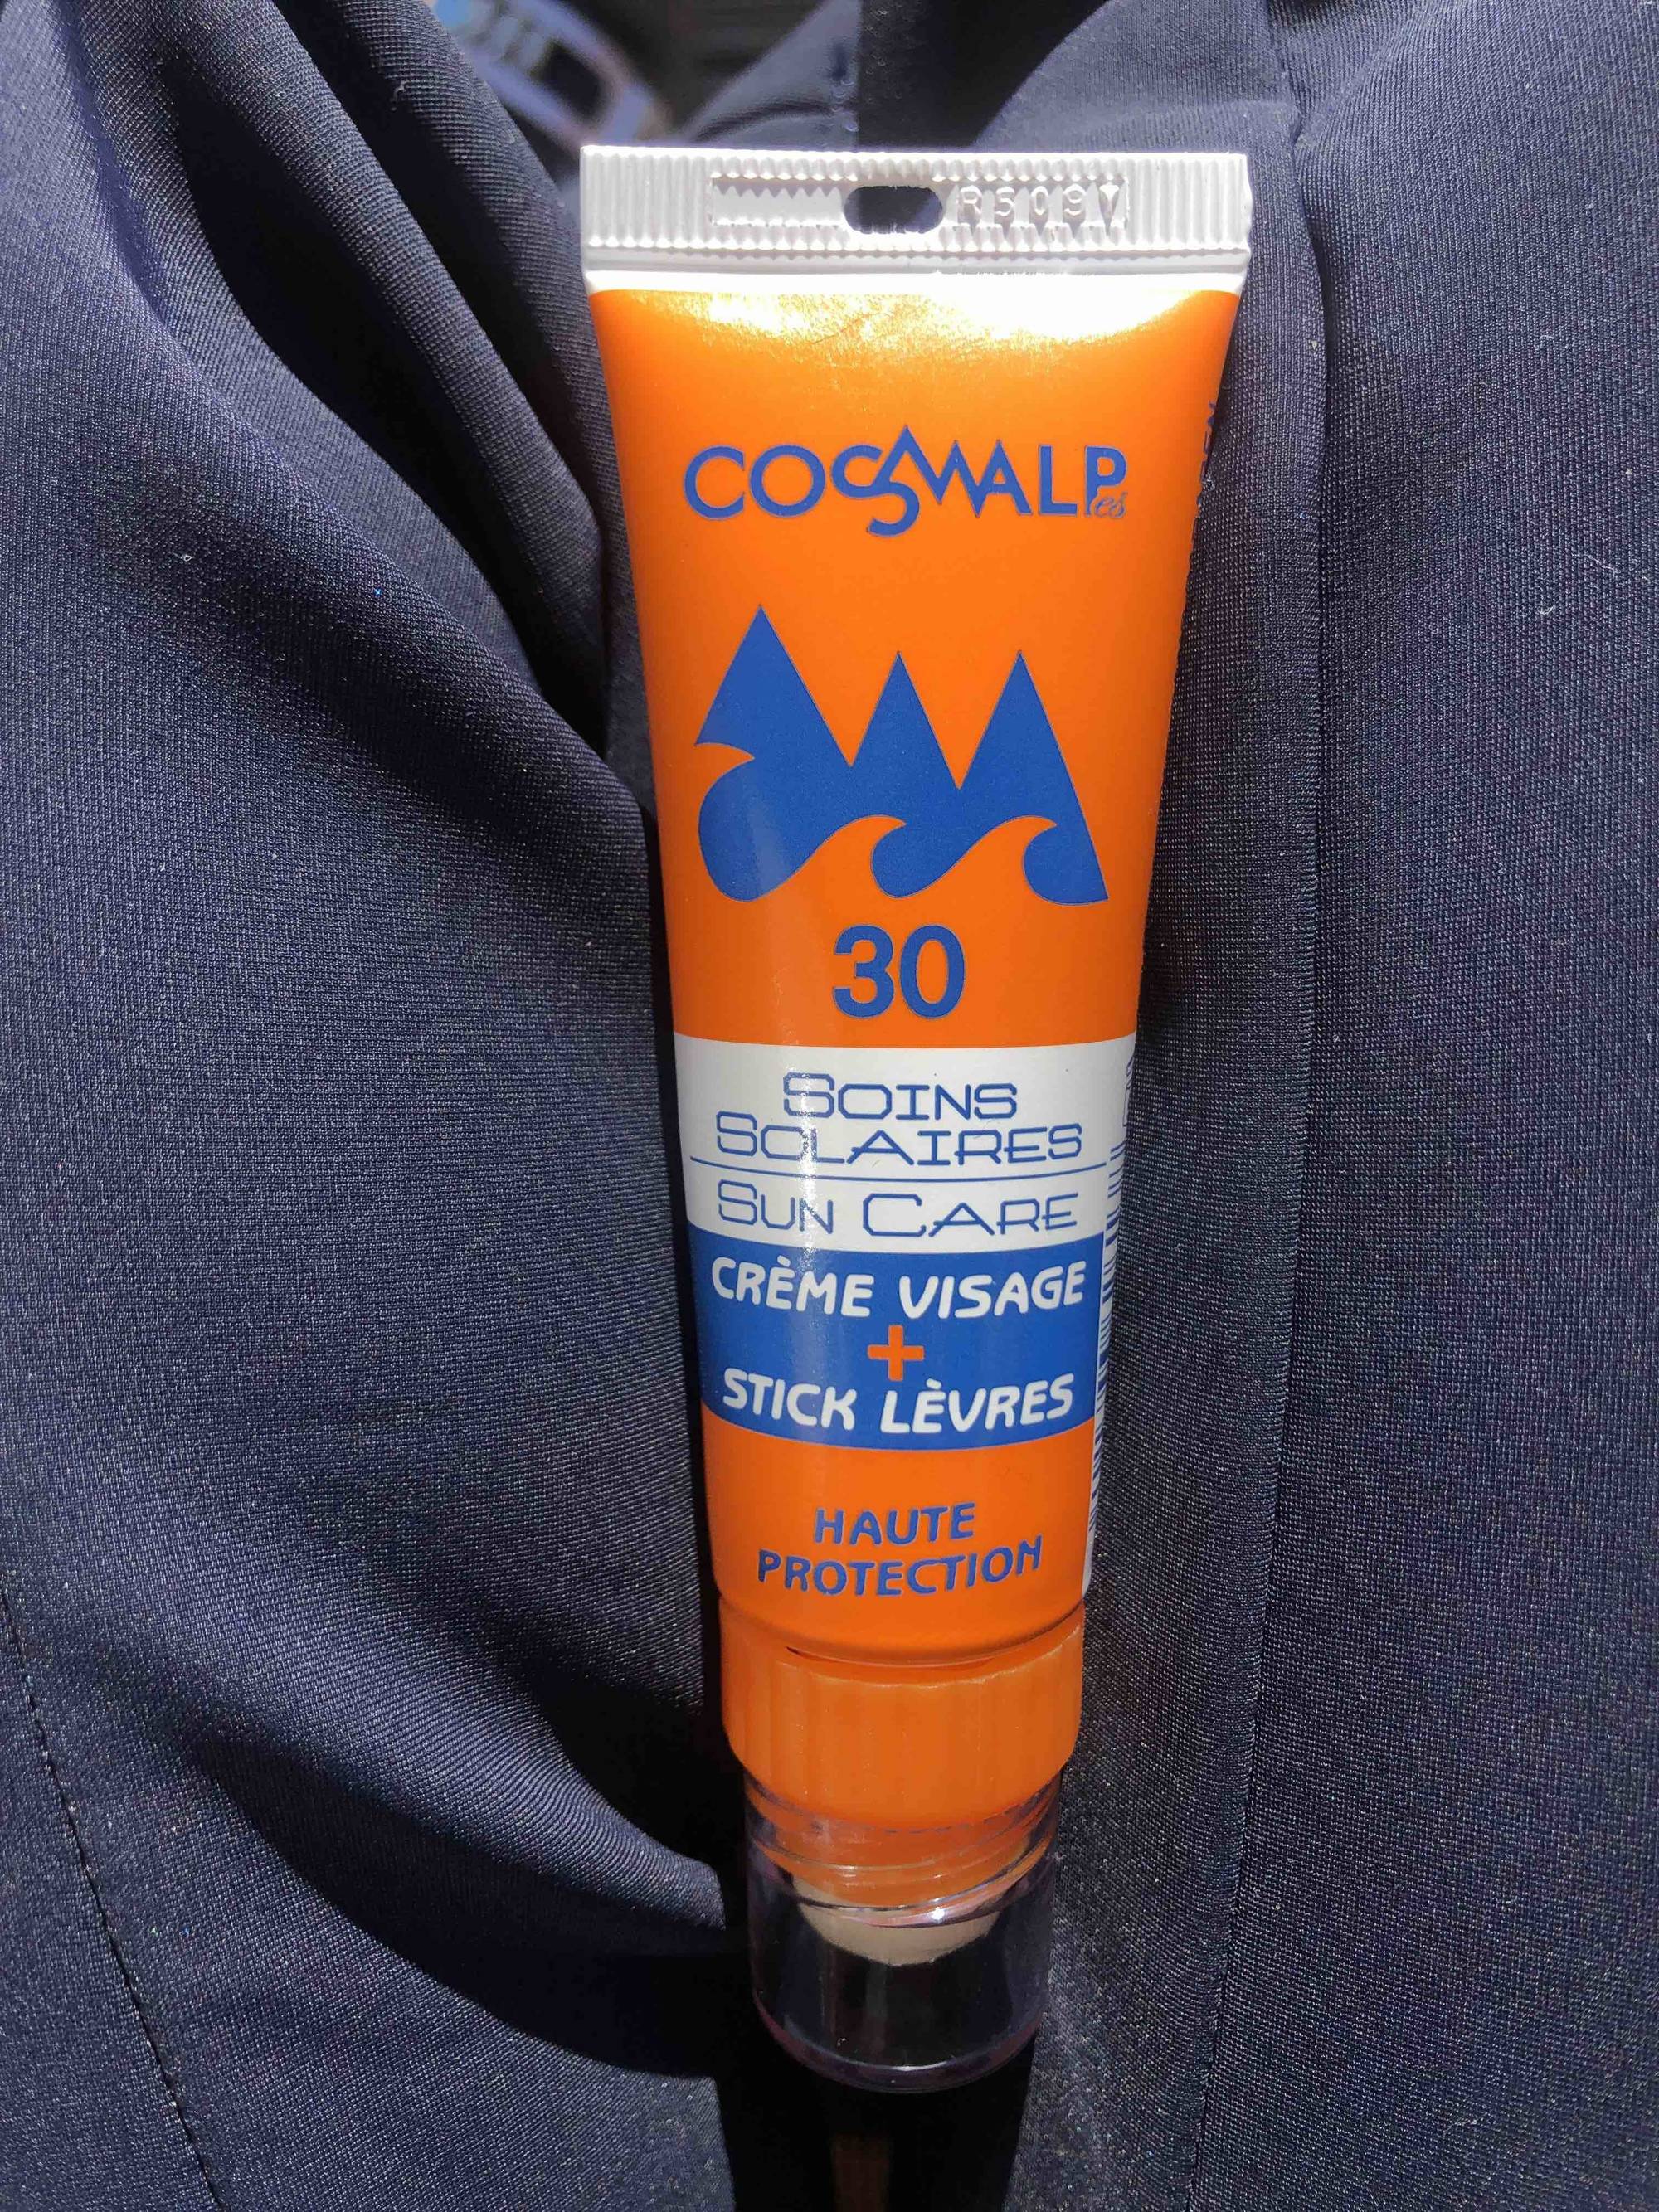 COSMALPES - Soins solaires - Crème visage + stick lèvres